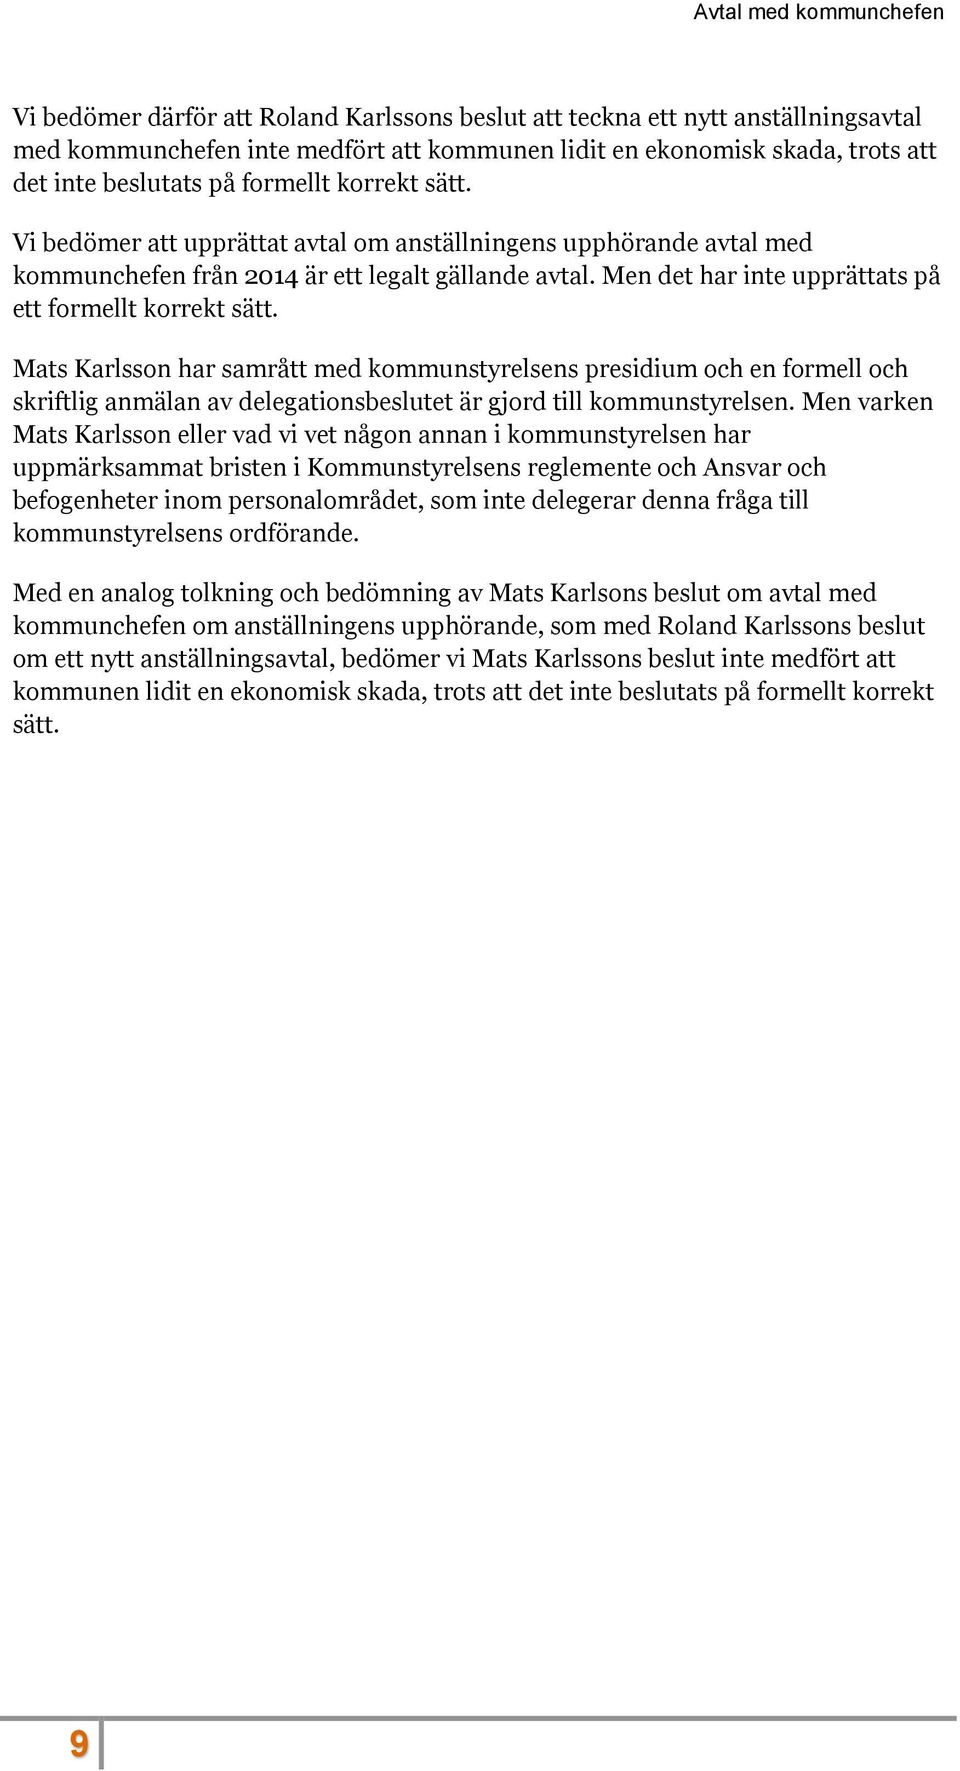 Mats Karlsson har samrått med kommunstyrelsens presidium och en formell och skriftlig anmälan av delegationsbeslutet är gjord till kommunstyrelsen.